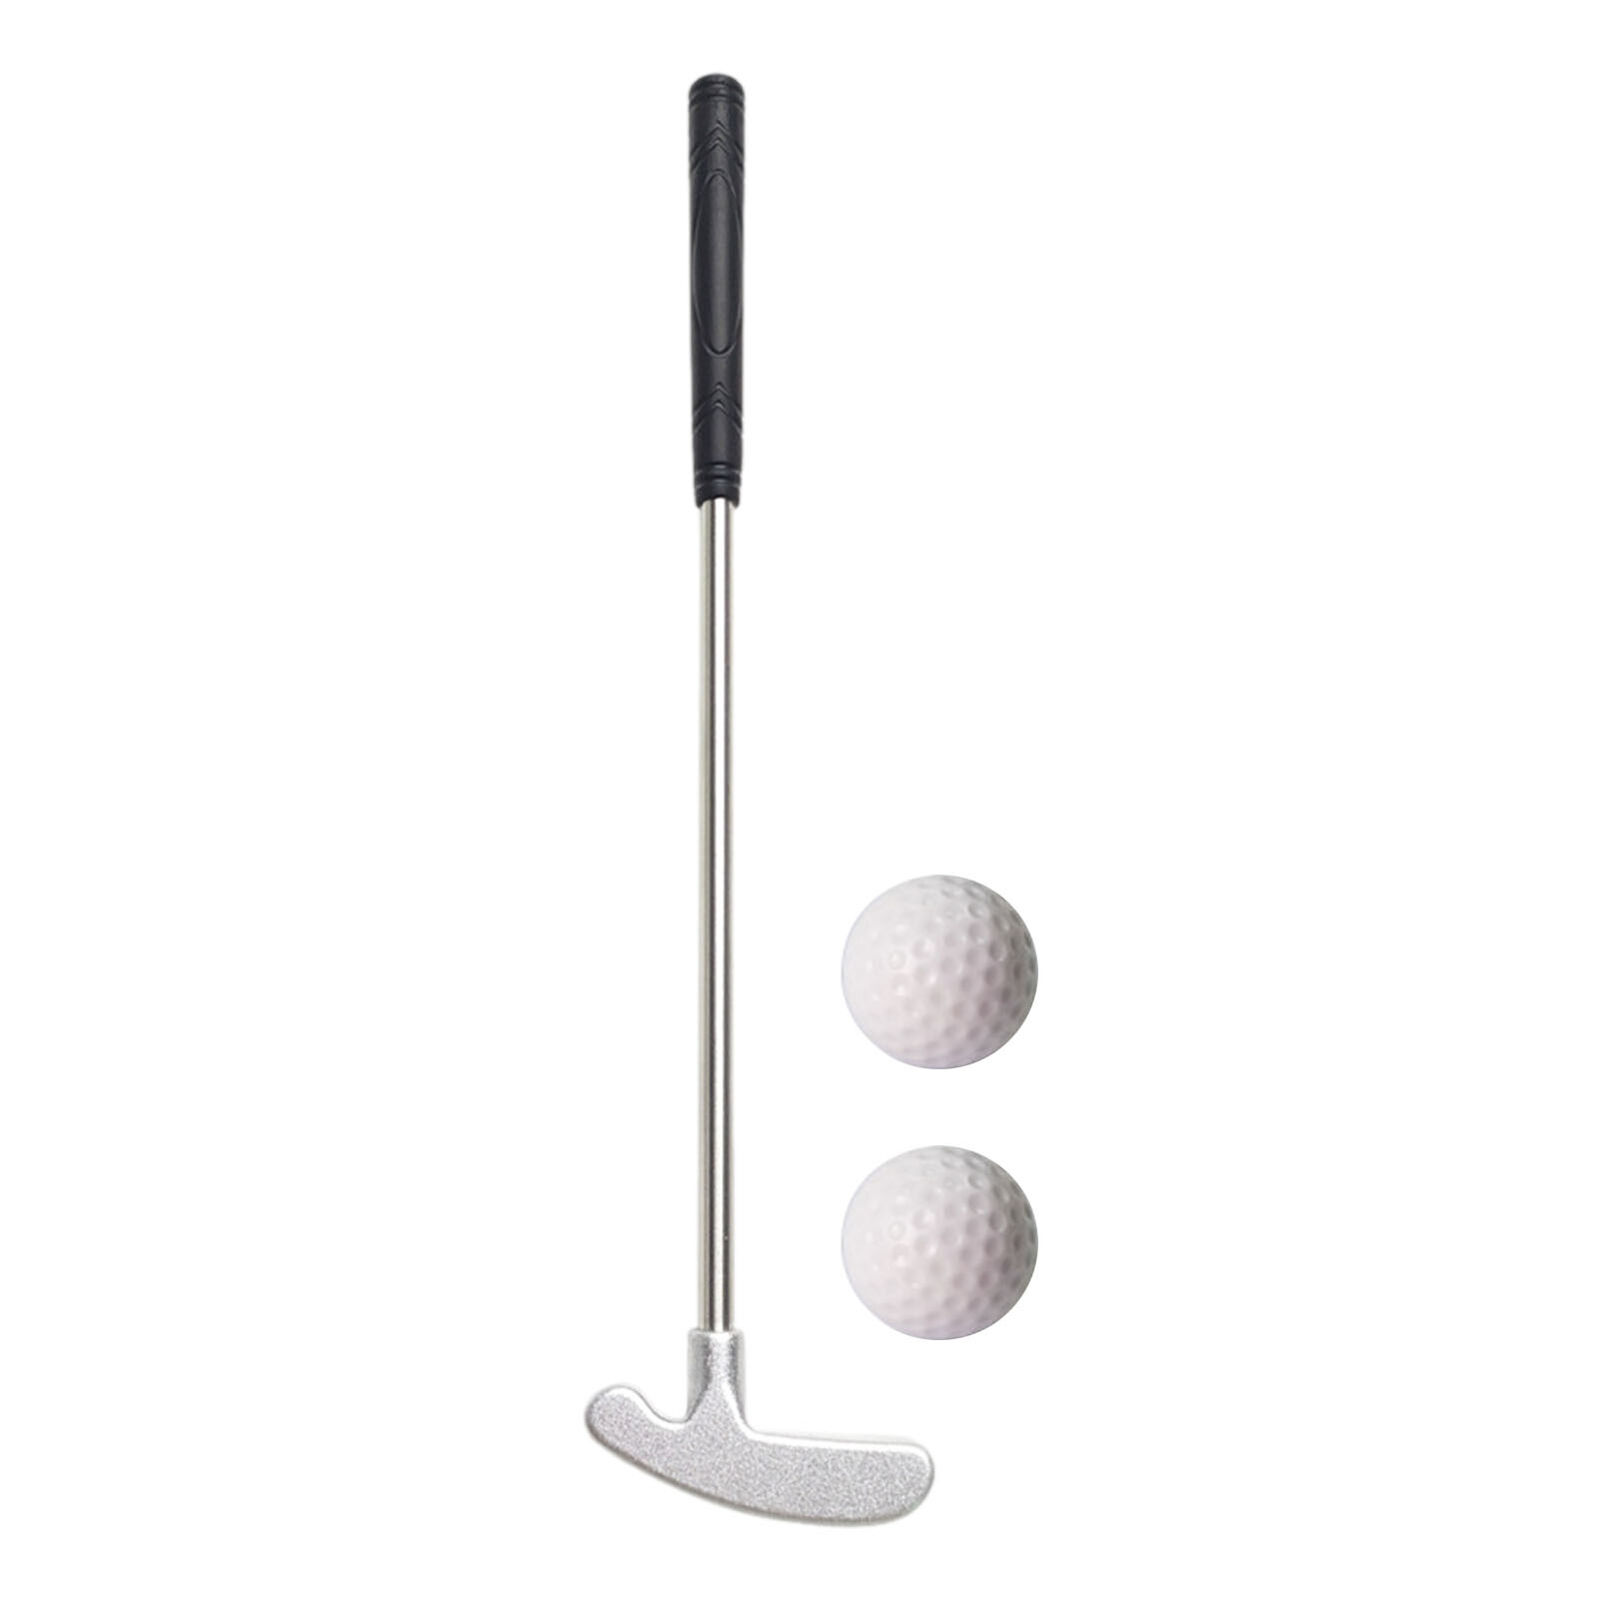 Mini Golf Putter Zinc Alloy Head Golf Clubs Stainless Steel Shaft TPR Grip